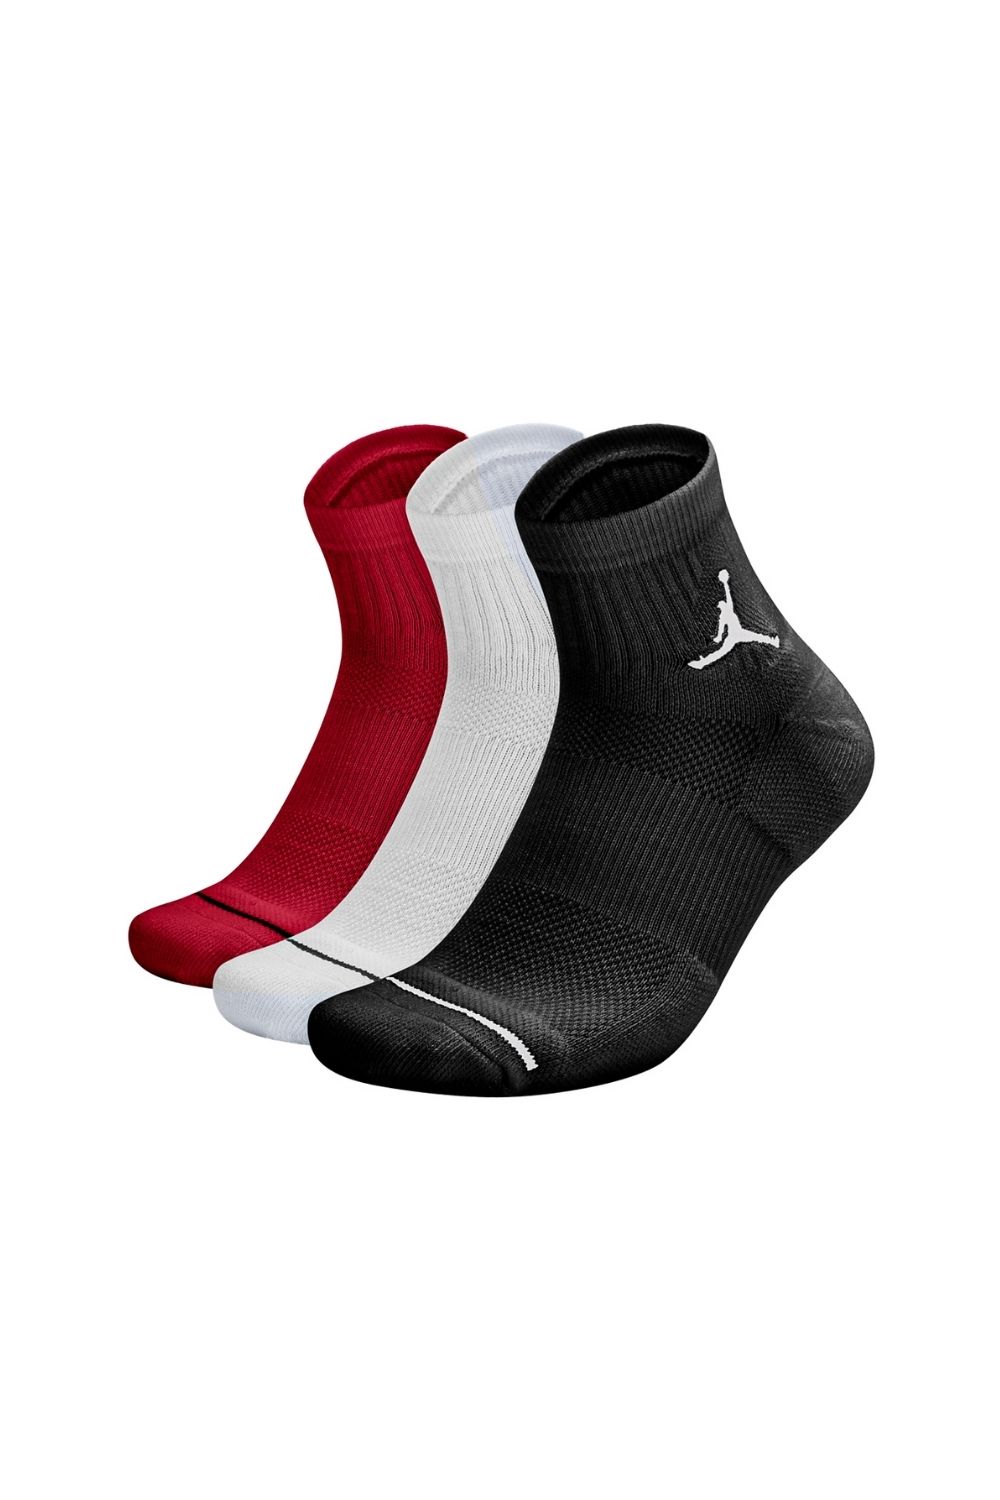 Γυναικεία/Αξεσουάρ/Κάλτσες NIKE - Unisex κάλτσες σετ των 3 NIKE JORDAN EVRY MAX ANKLE κόκκινες λευκές μαύρες